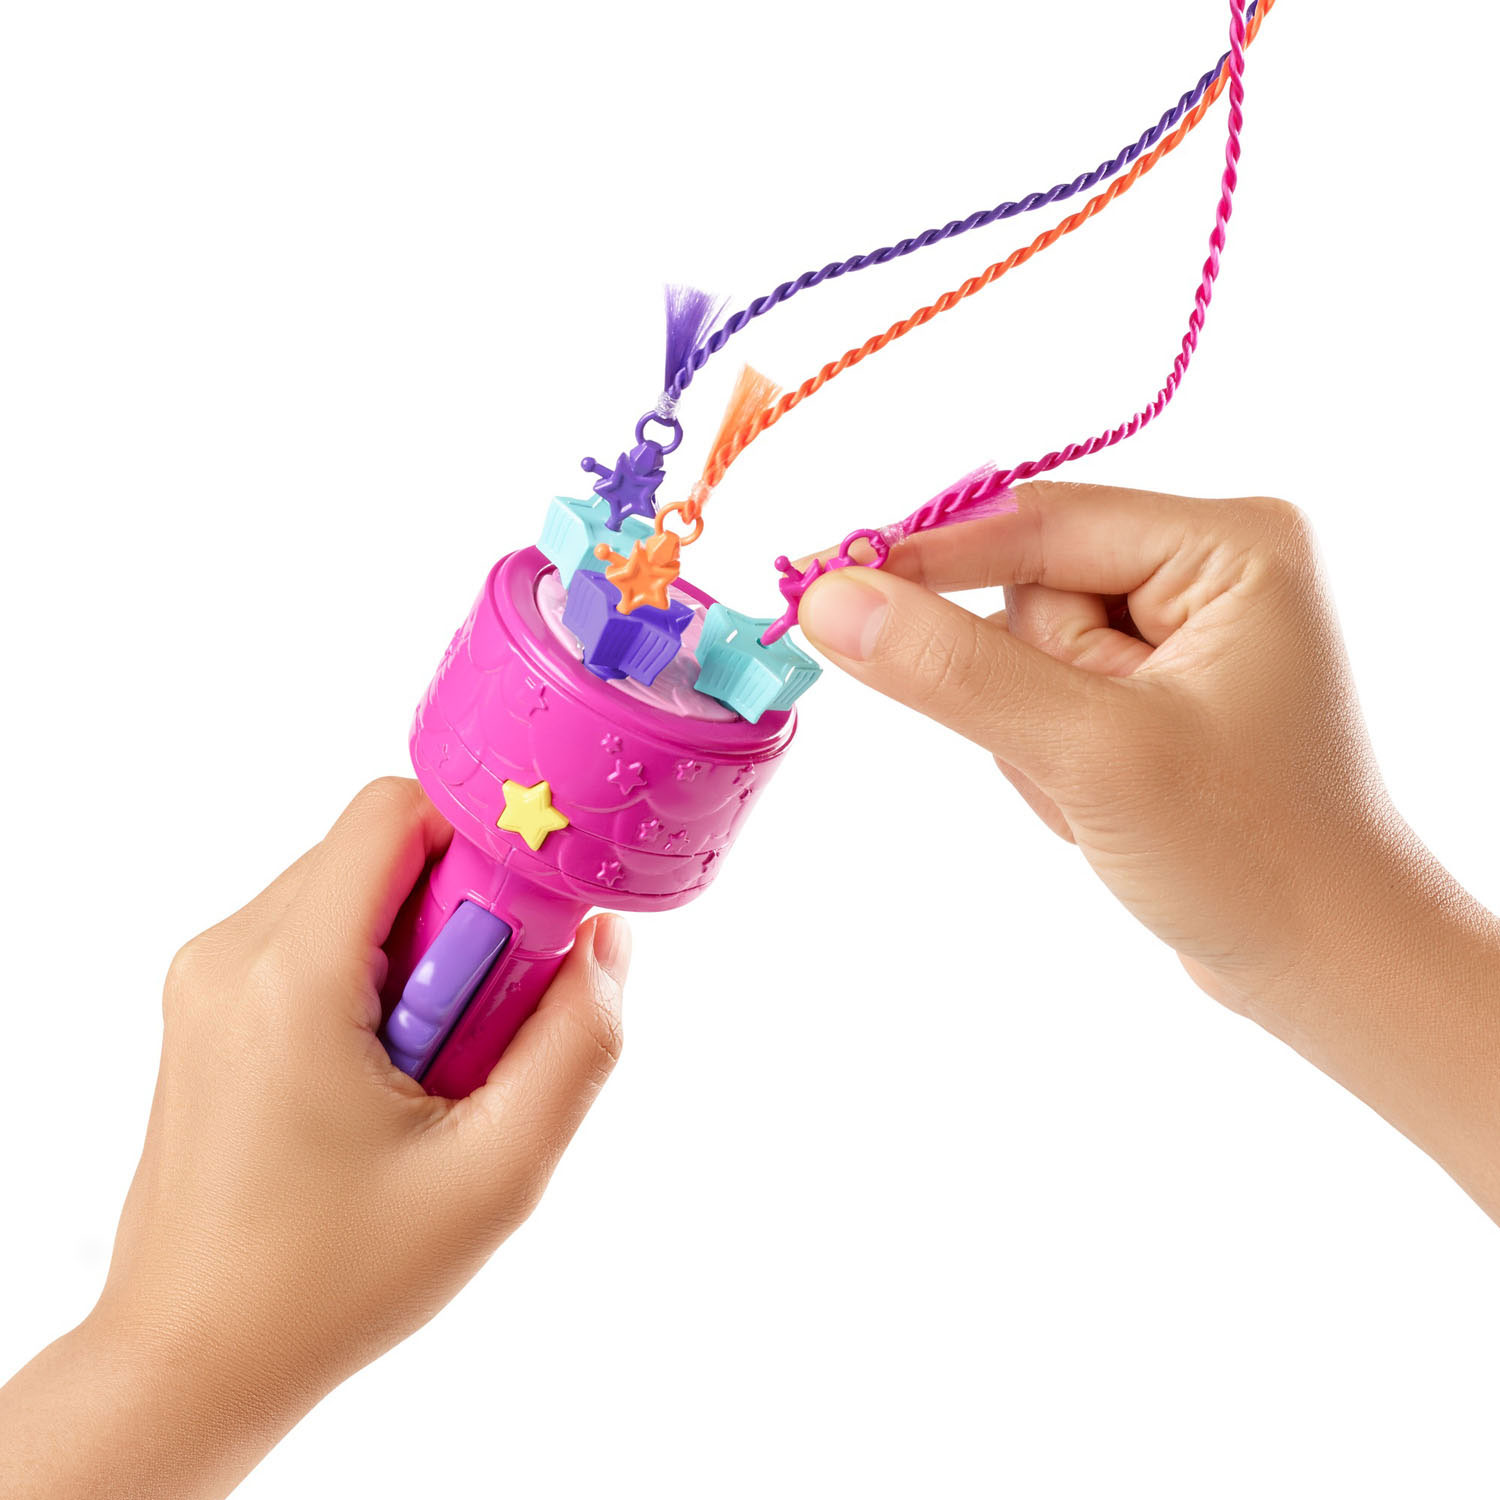 Barbie Dreamtopia Haarverzorgingspop en Accessoires